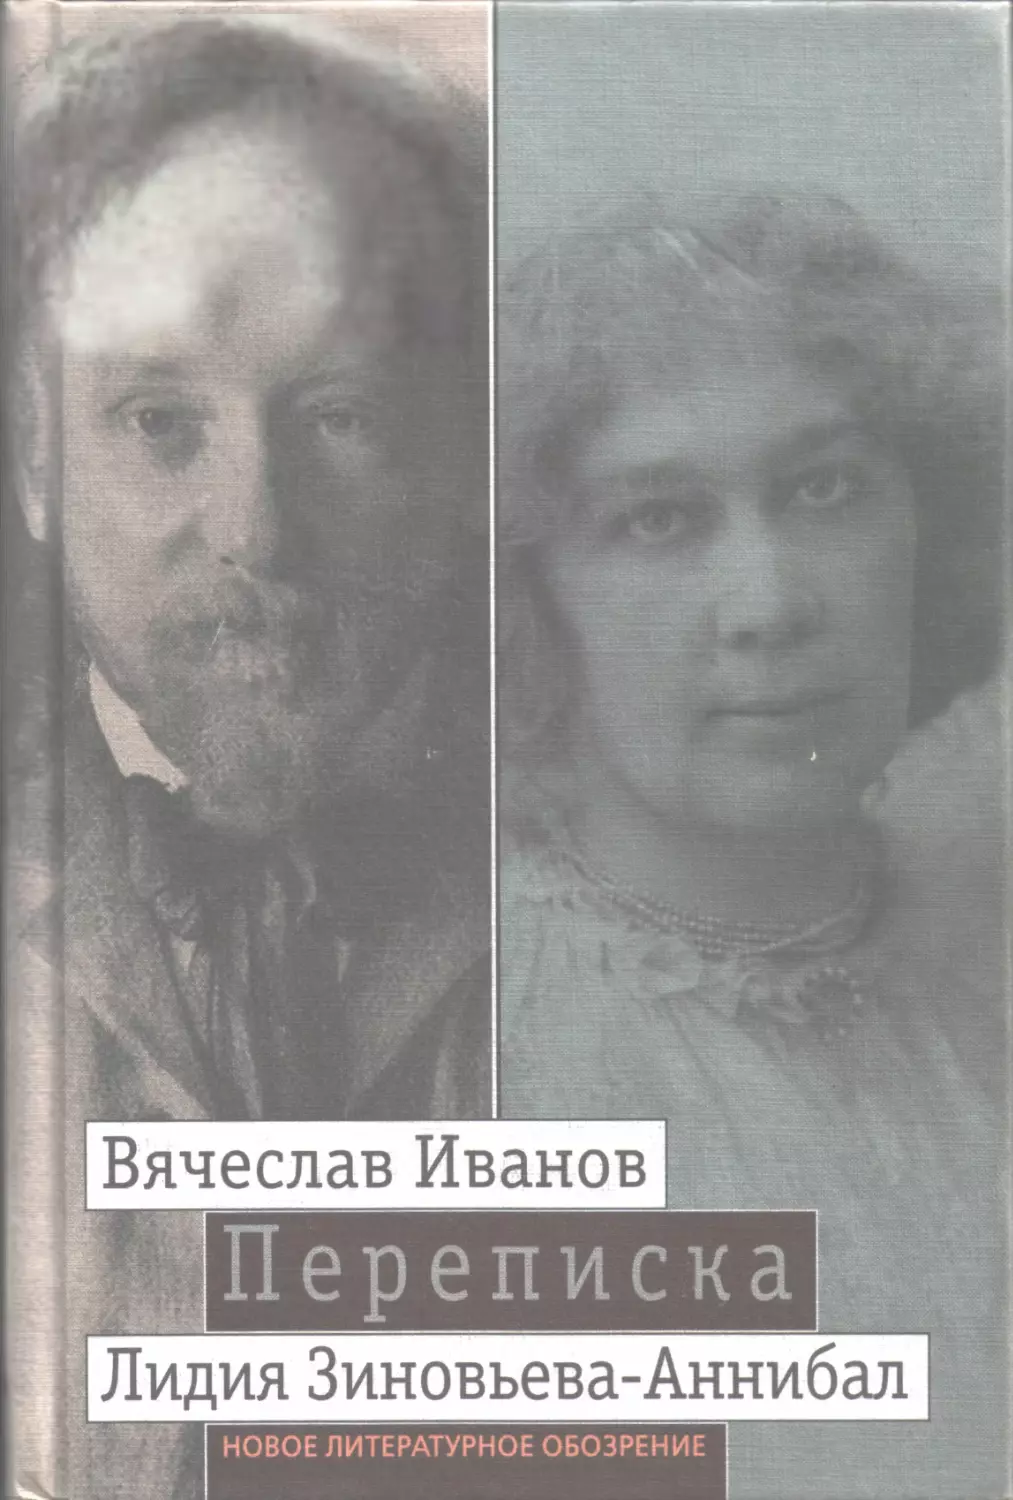 Иванов Вячеслав, Зиновьева-Аннибал Лидия. Переписка: 1894—1903. Т. 2.